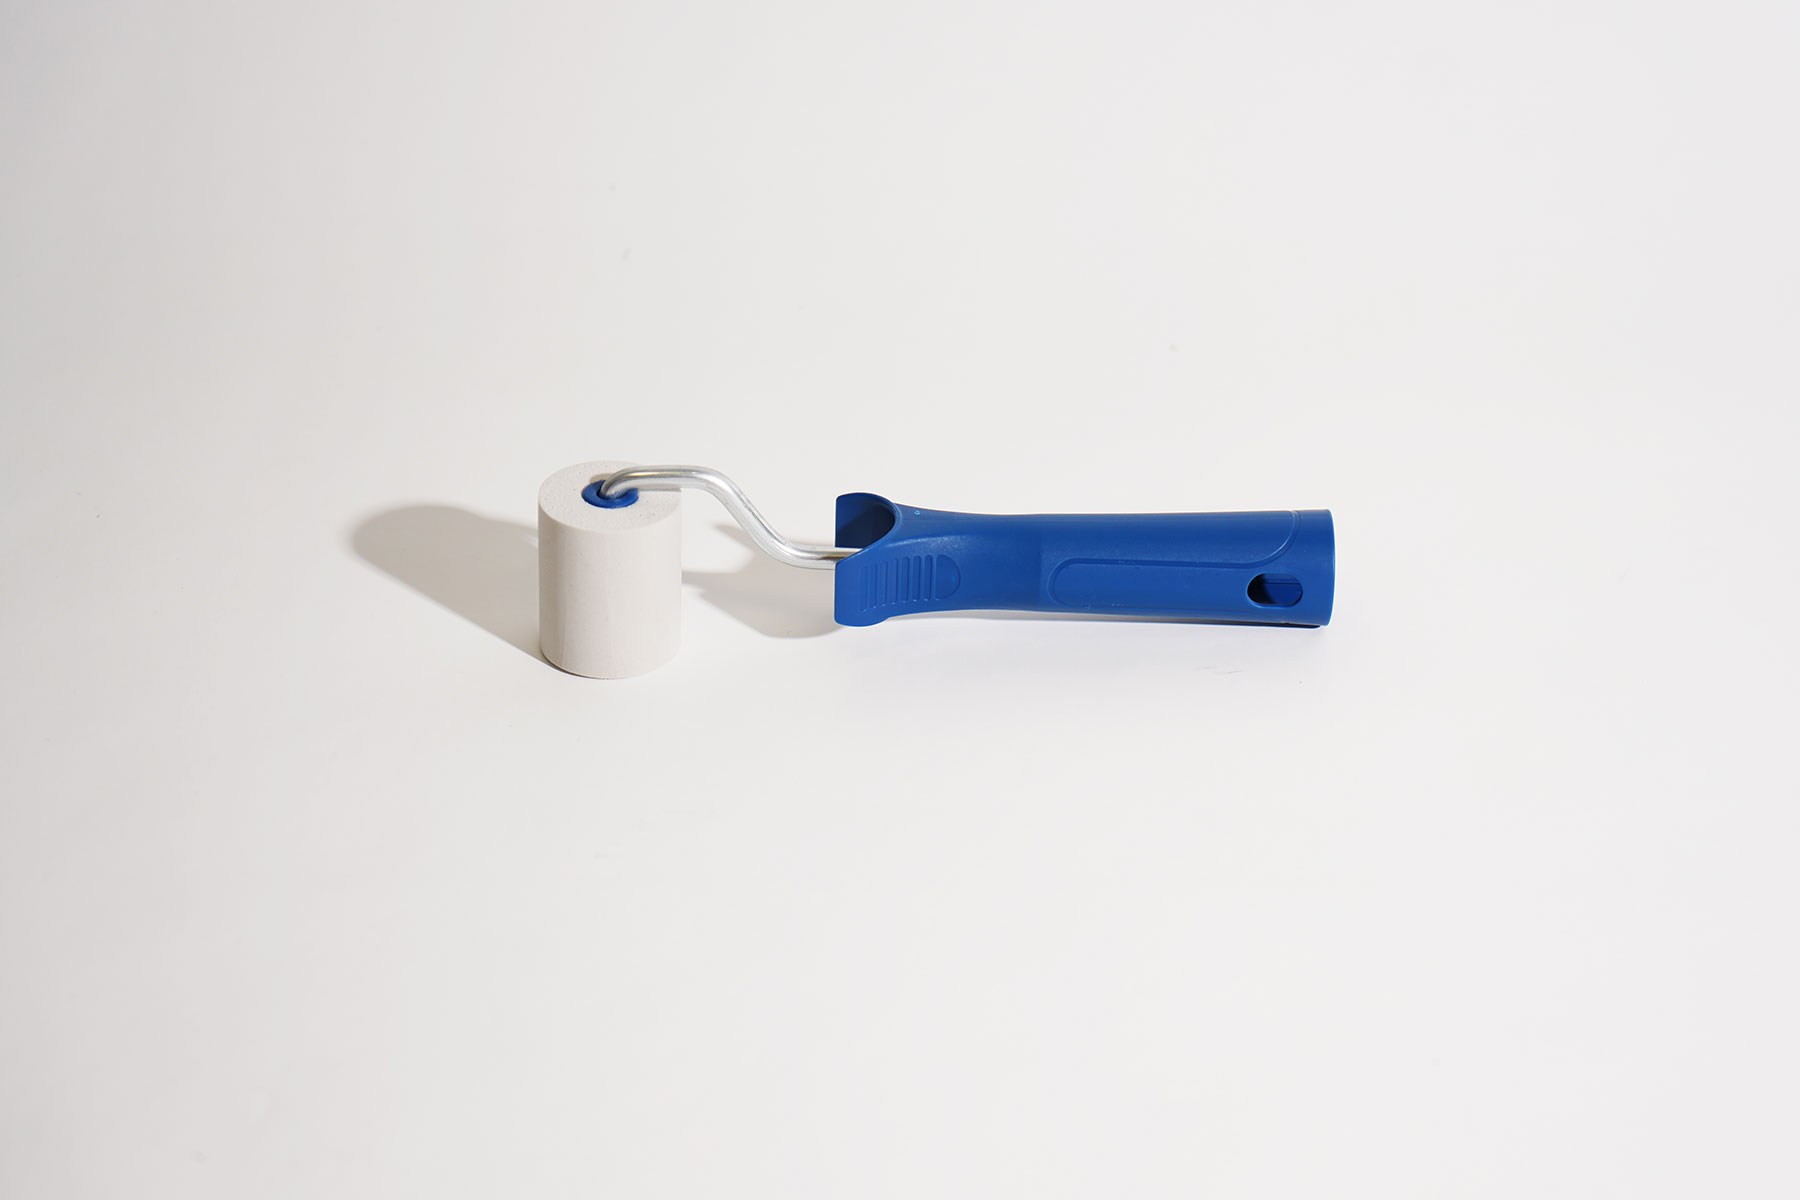             Rodillo de presión de plástico de 4,5 cm con rodillo de dobladillo de PU
        